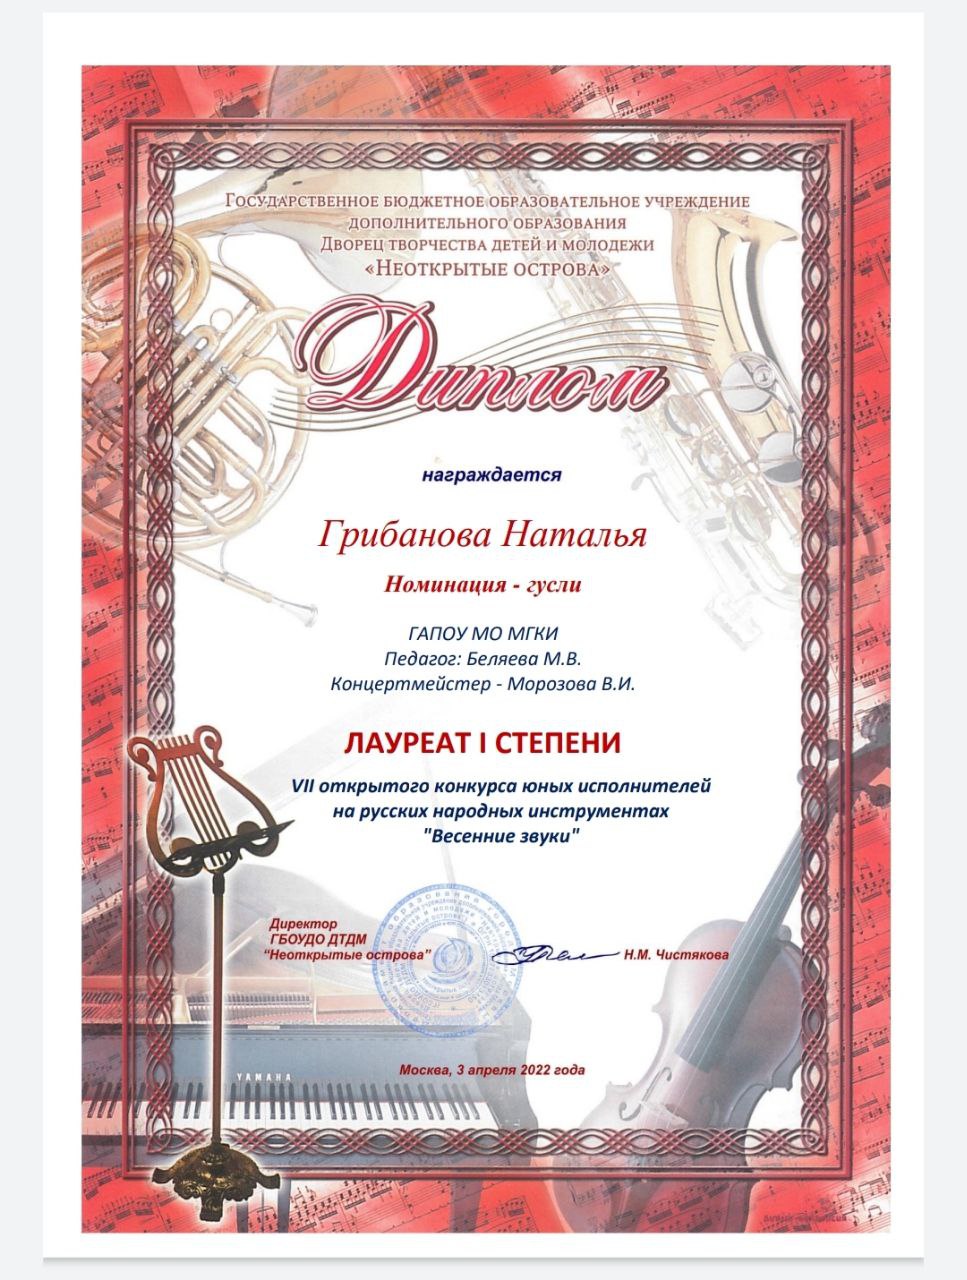 Грибанова Наталья, студентка класса преподавателя Беляевой М. В. (отдел "Инструменты народного оркестра" - гусли) выиграла конкурс!